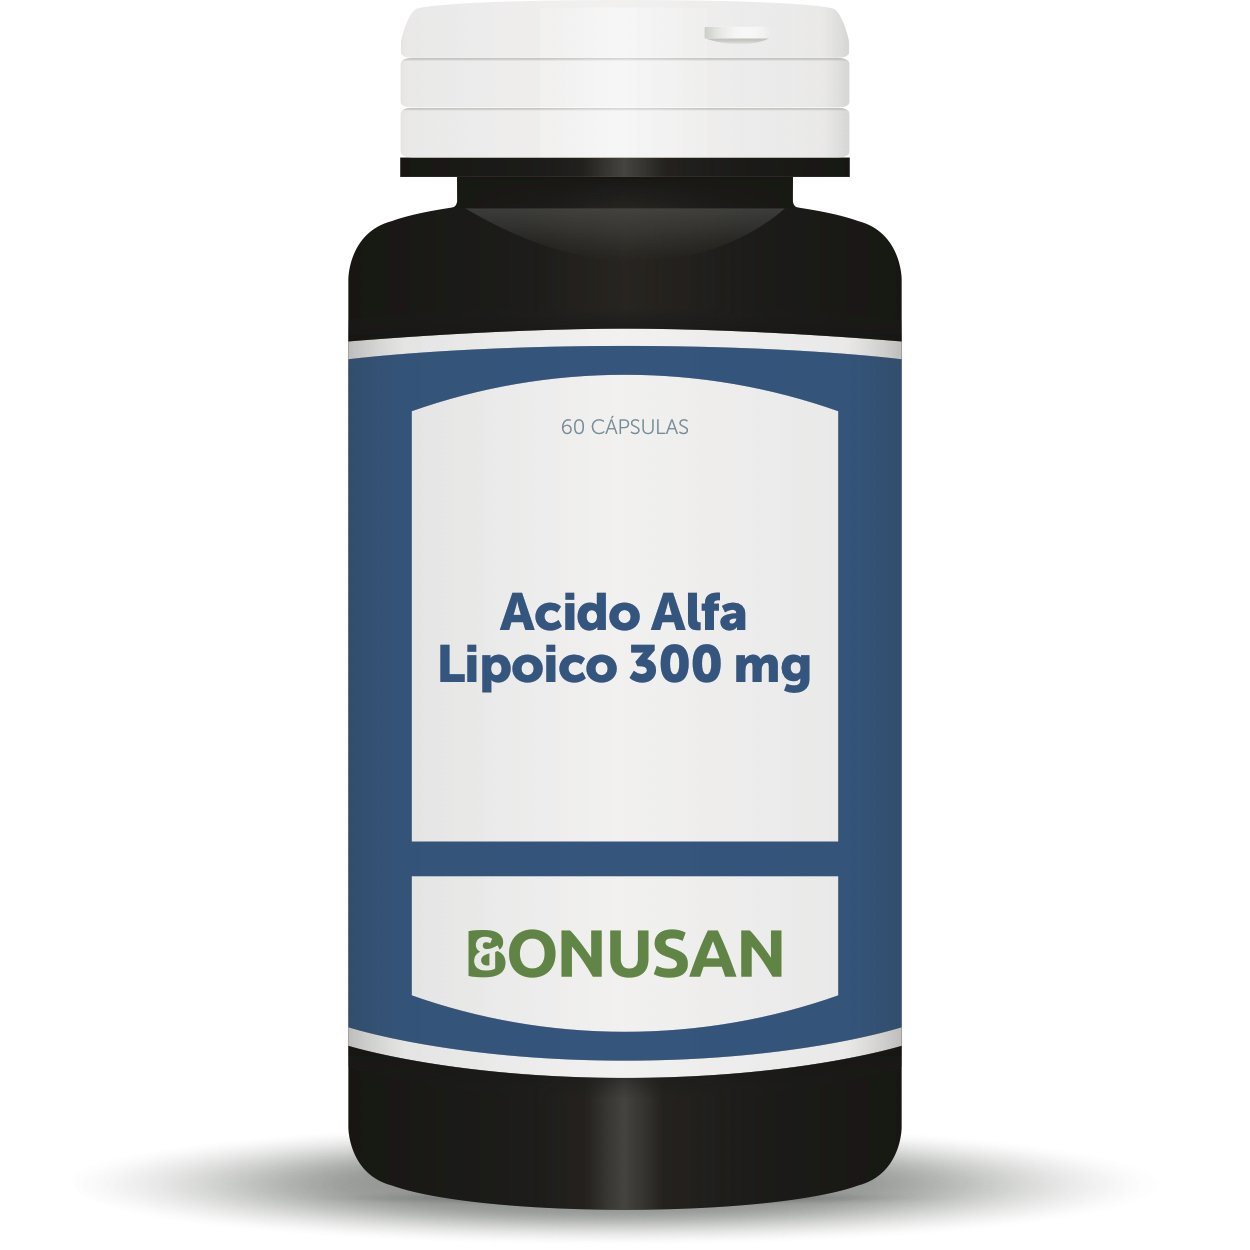 Acido Alfa Lipoico 300 mg 60 Capsulas | Bonusan - Dietetica Ferrer